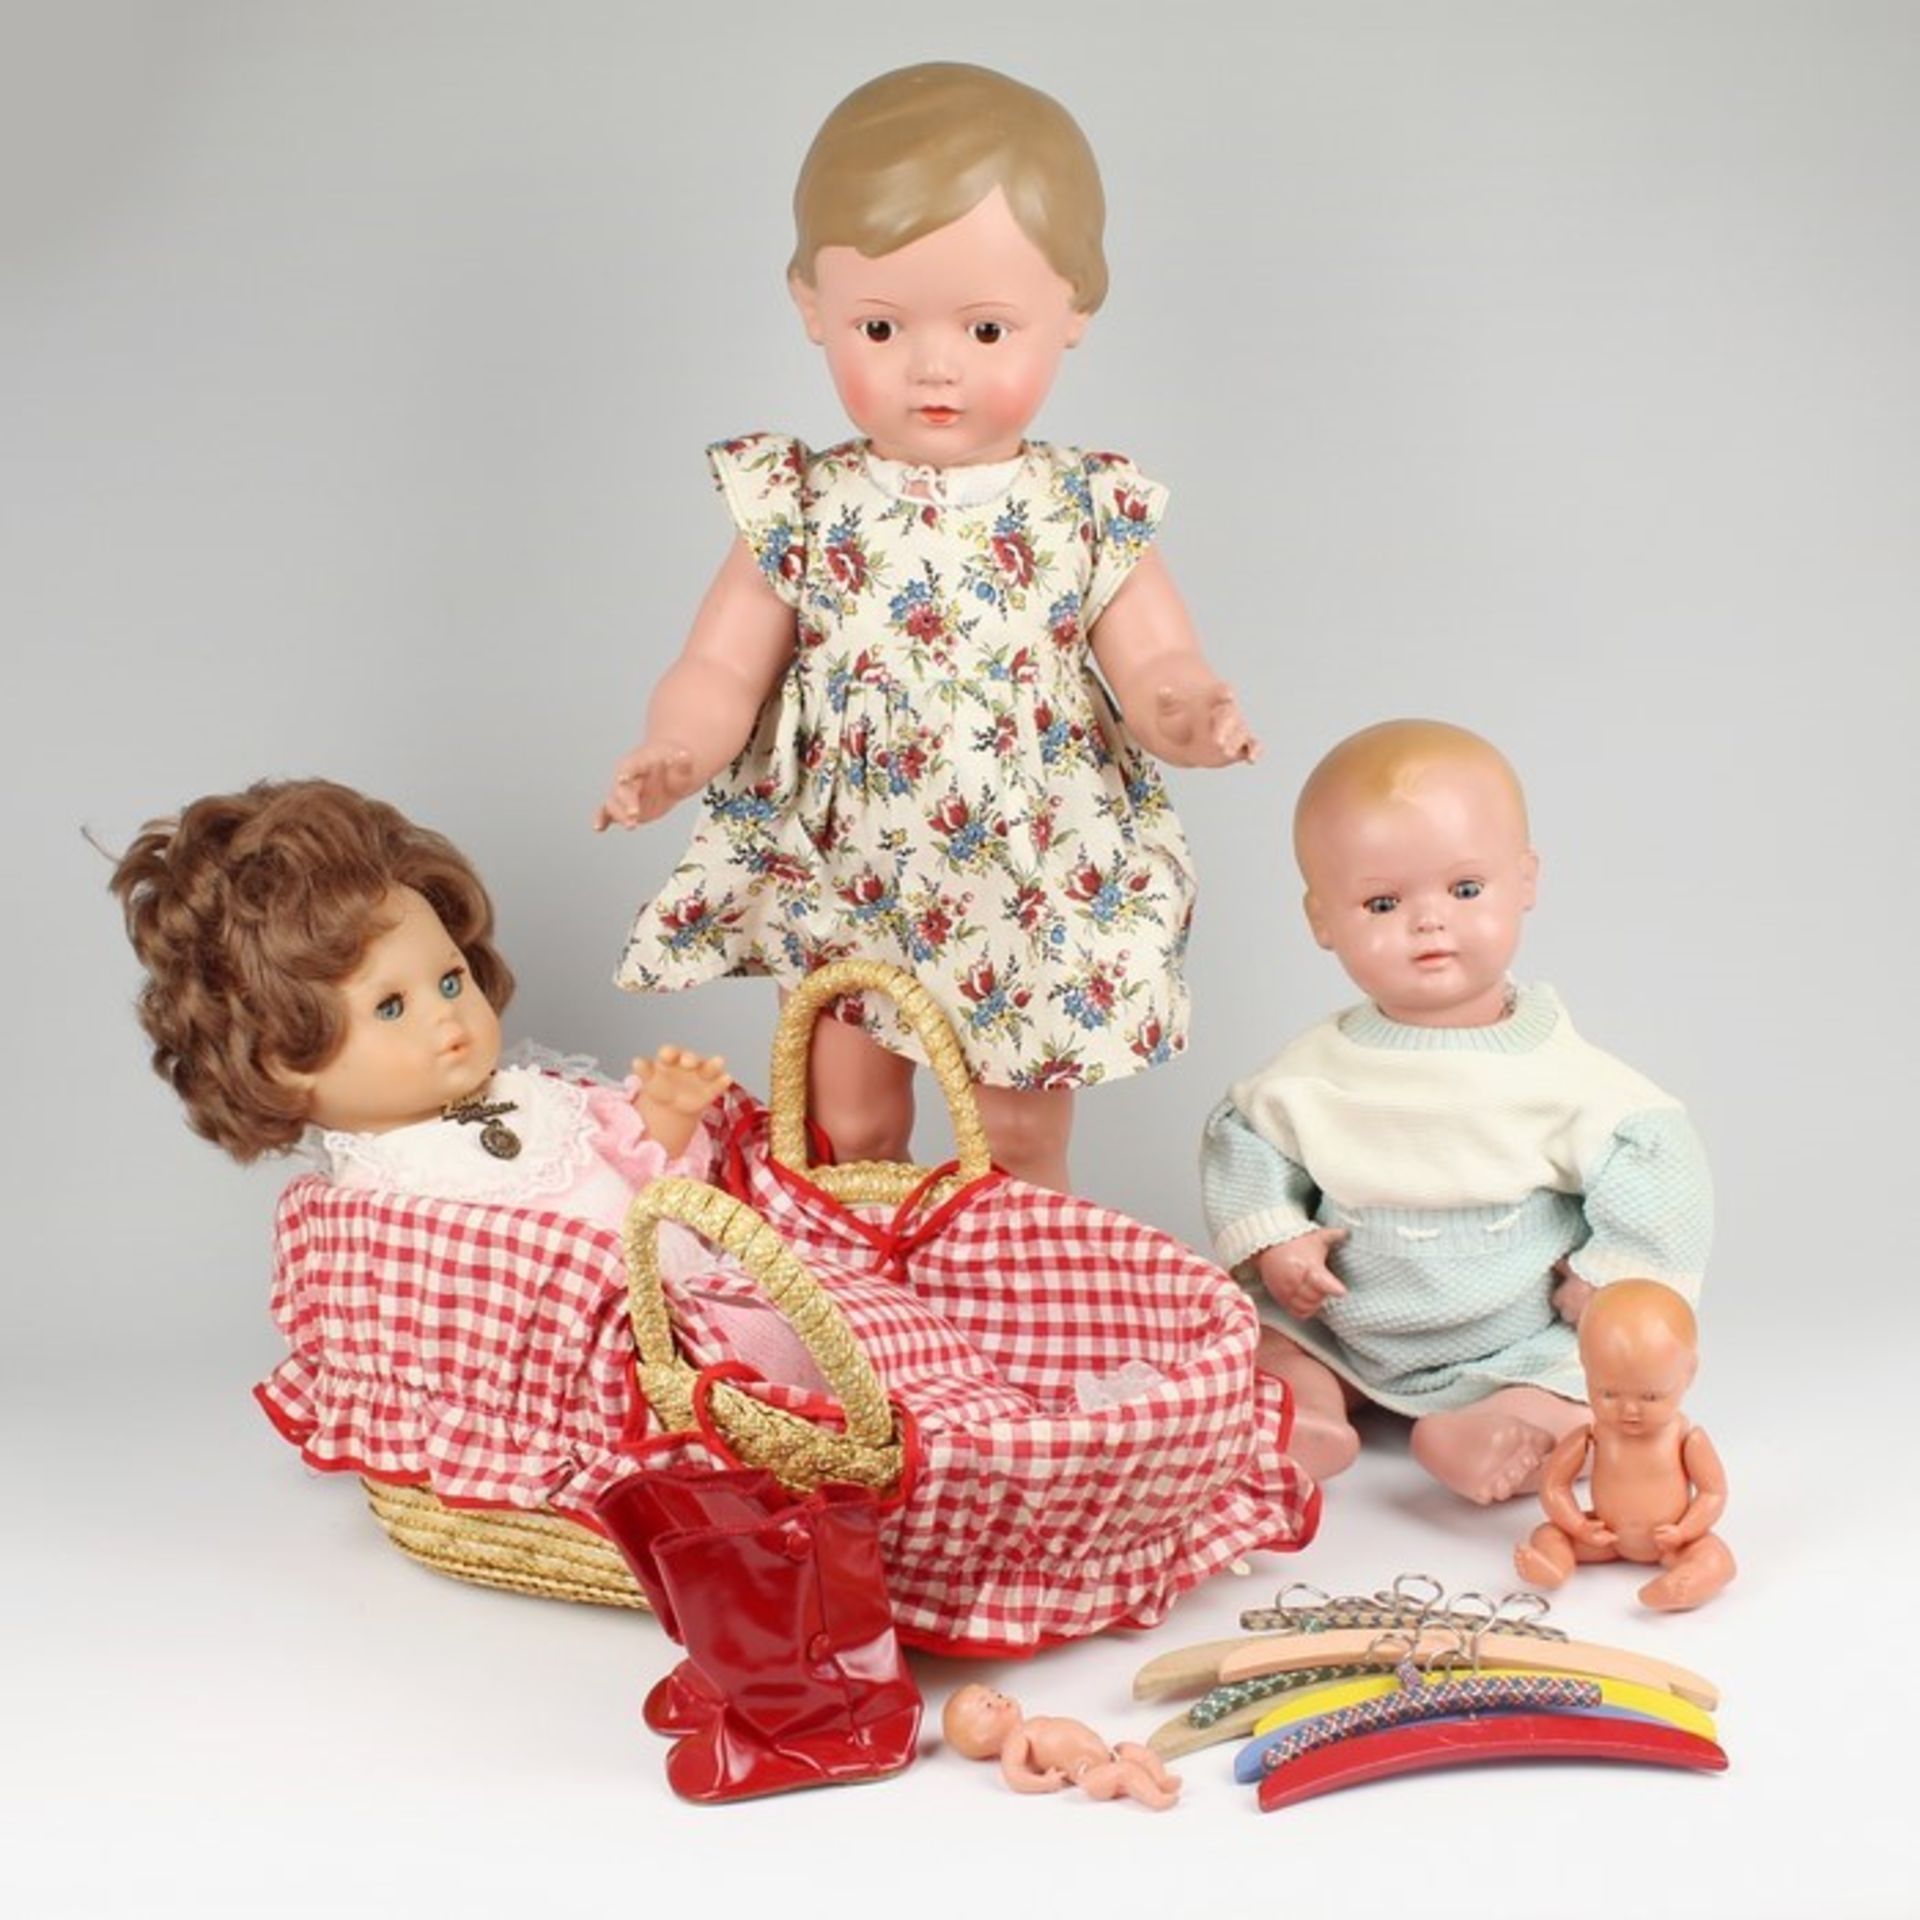 Puppen u.a.5 Puppen, Zubehör; 4x Schildkröt: Christel, gem. SiR 50/56, 1950er J., Kurbelkopf, braune